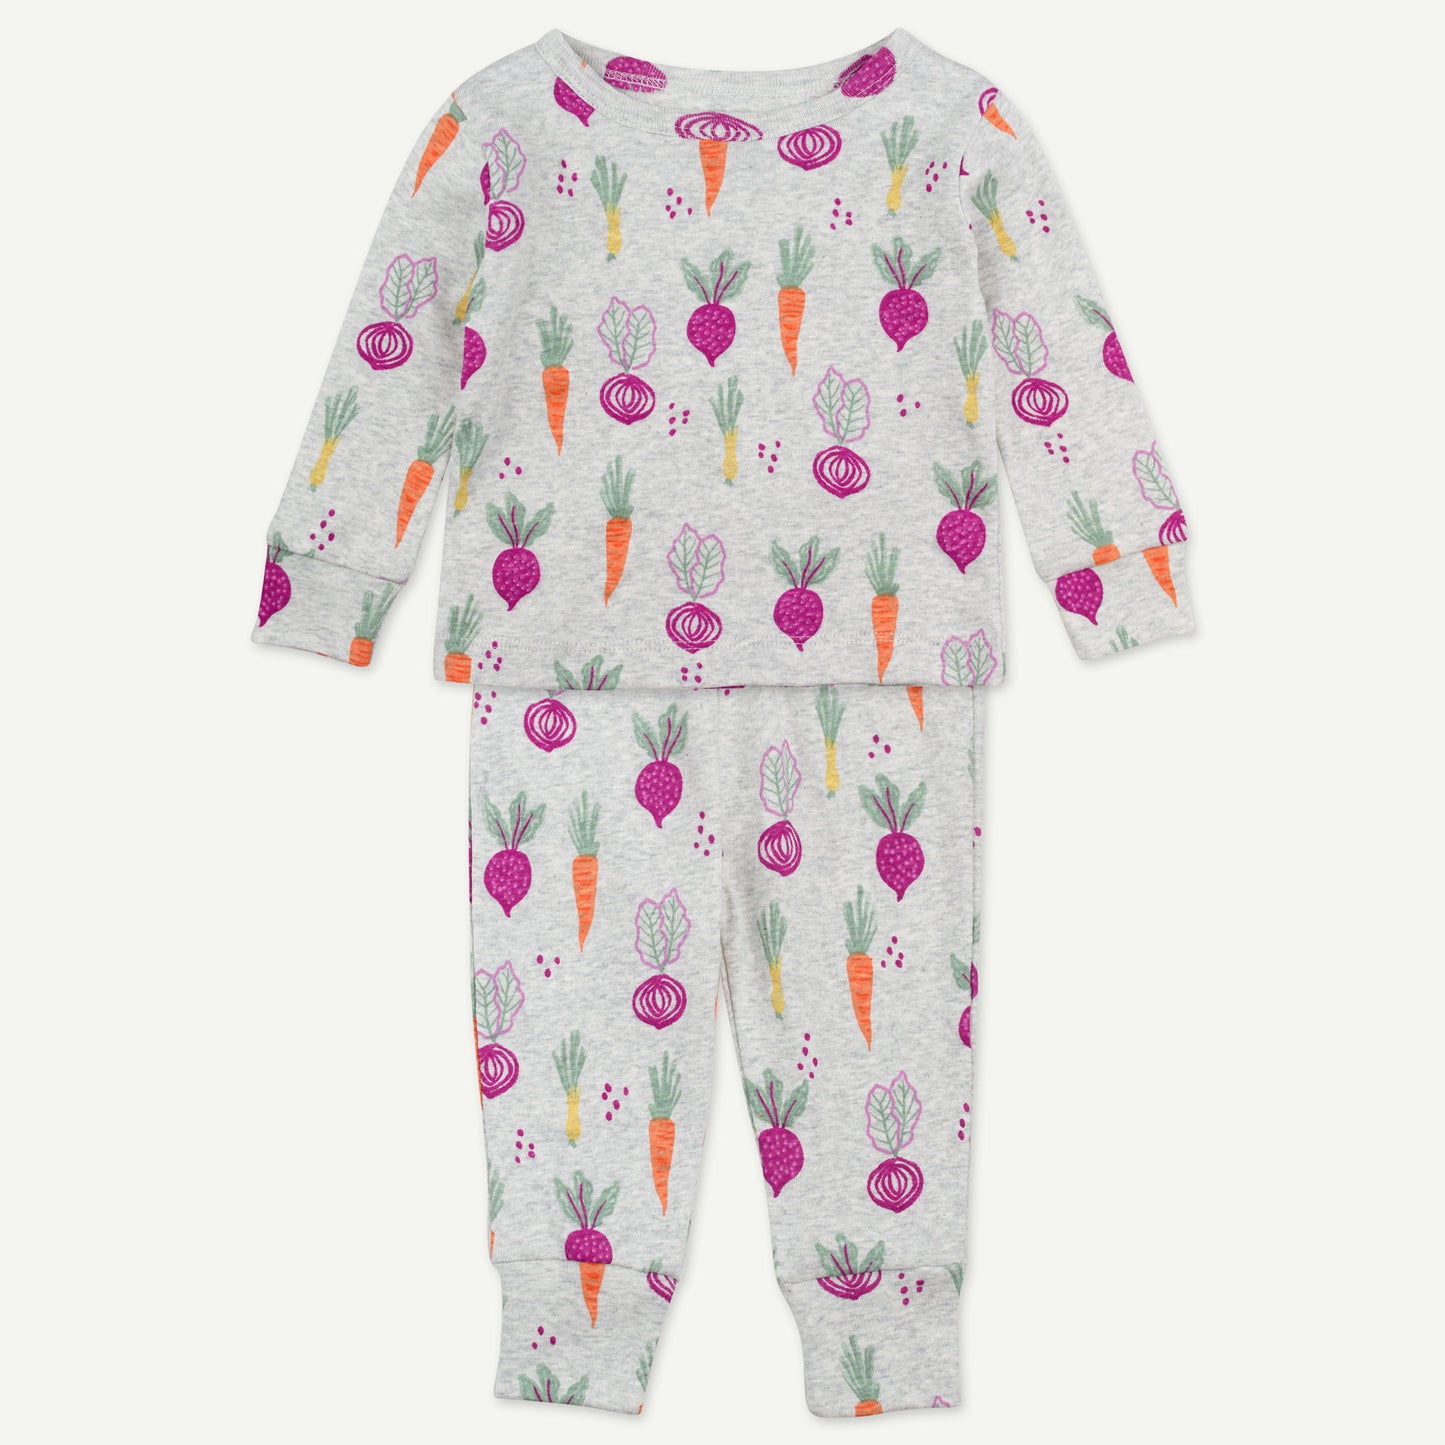 2-Piece Pajama in Veggie Print - Toddler